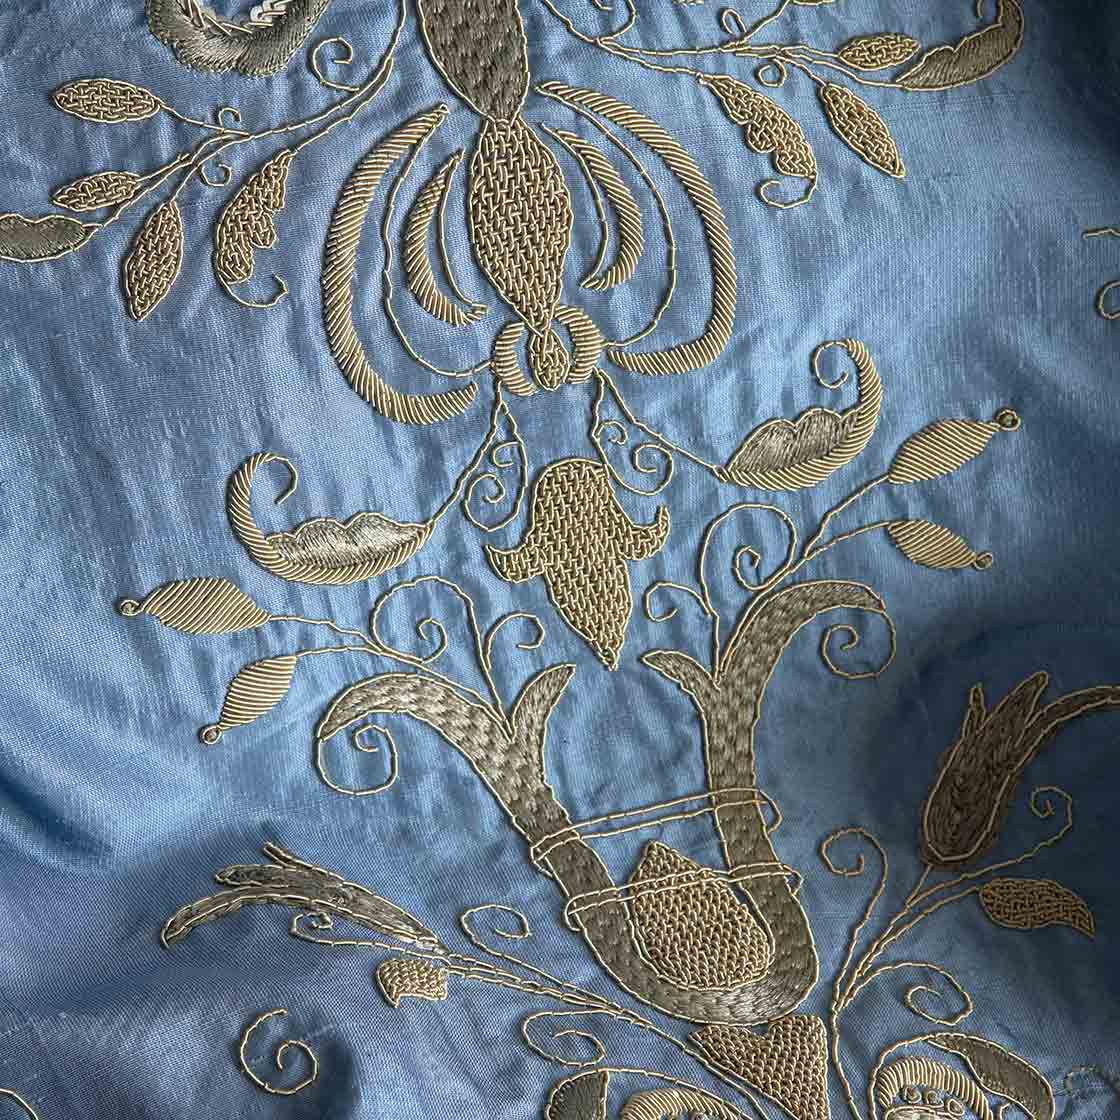 Zola embroidery in Duchess silk - Cornflower - Beaumont & Fletcher